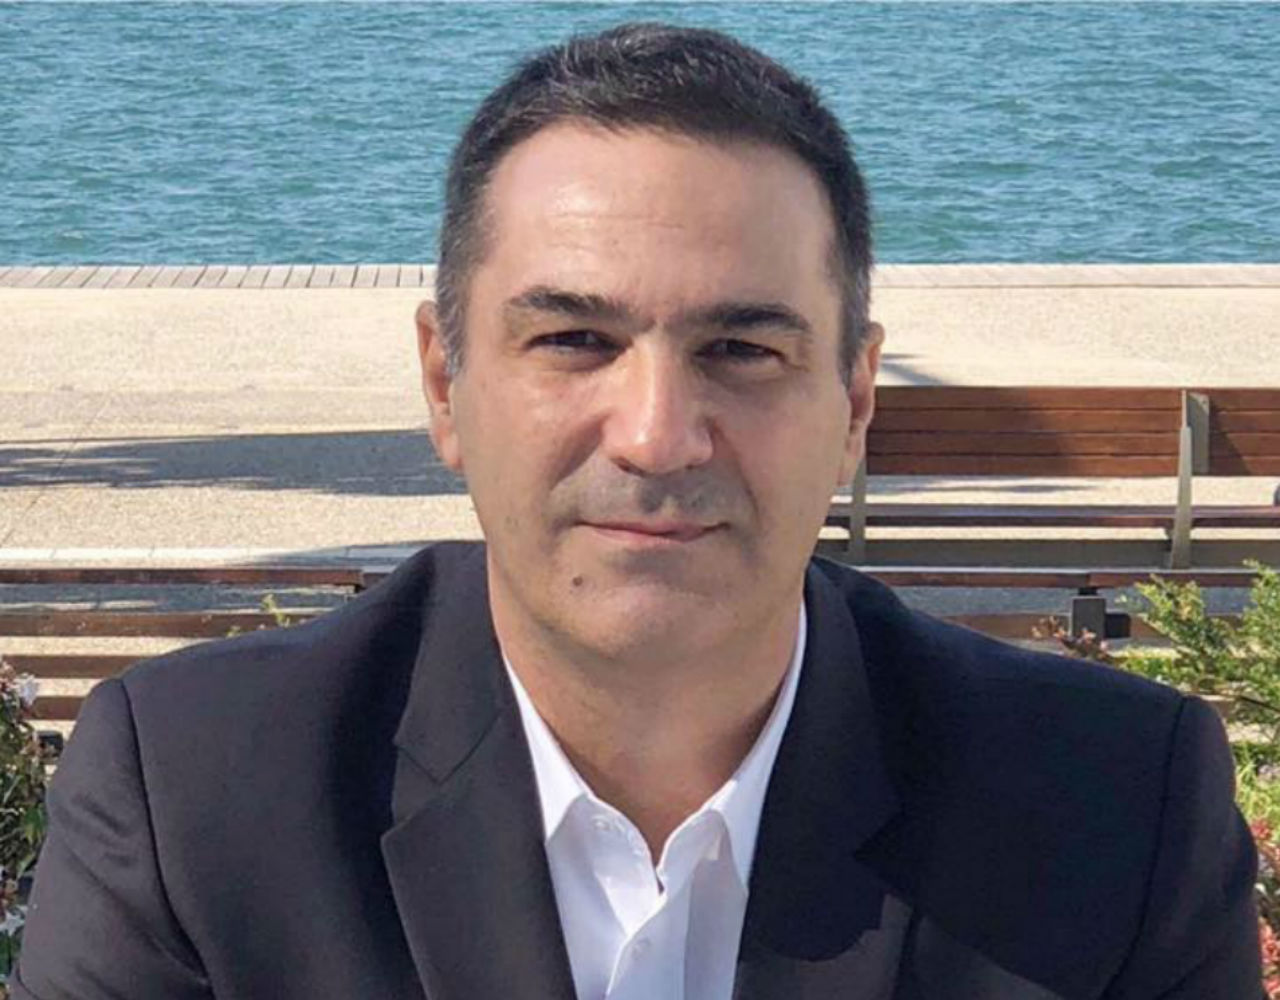 Ο Τάκης Διαμαντόπουλος μιλάει για την ασφάλεια των πολιτών